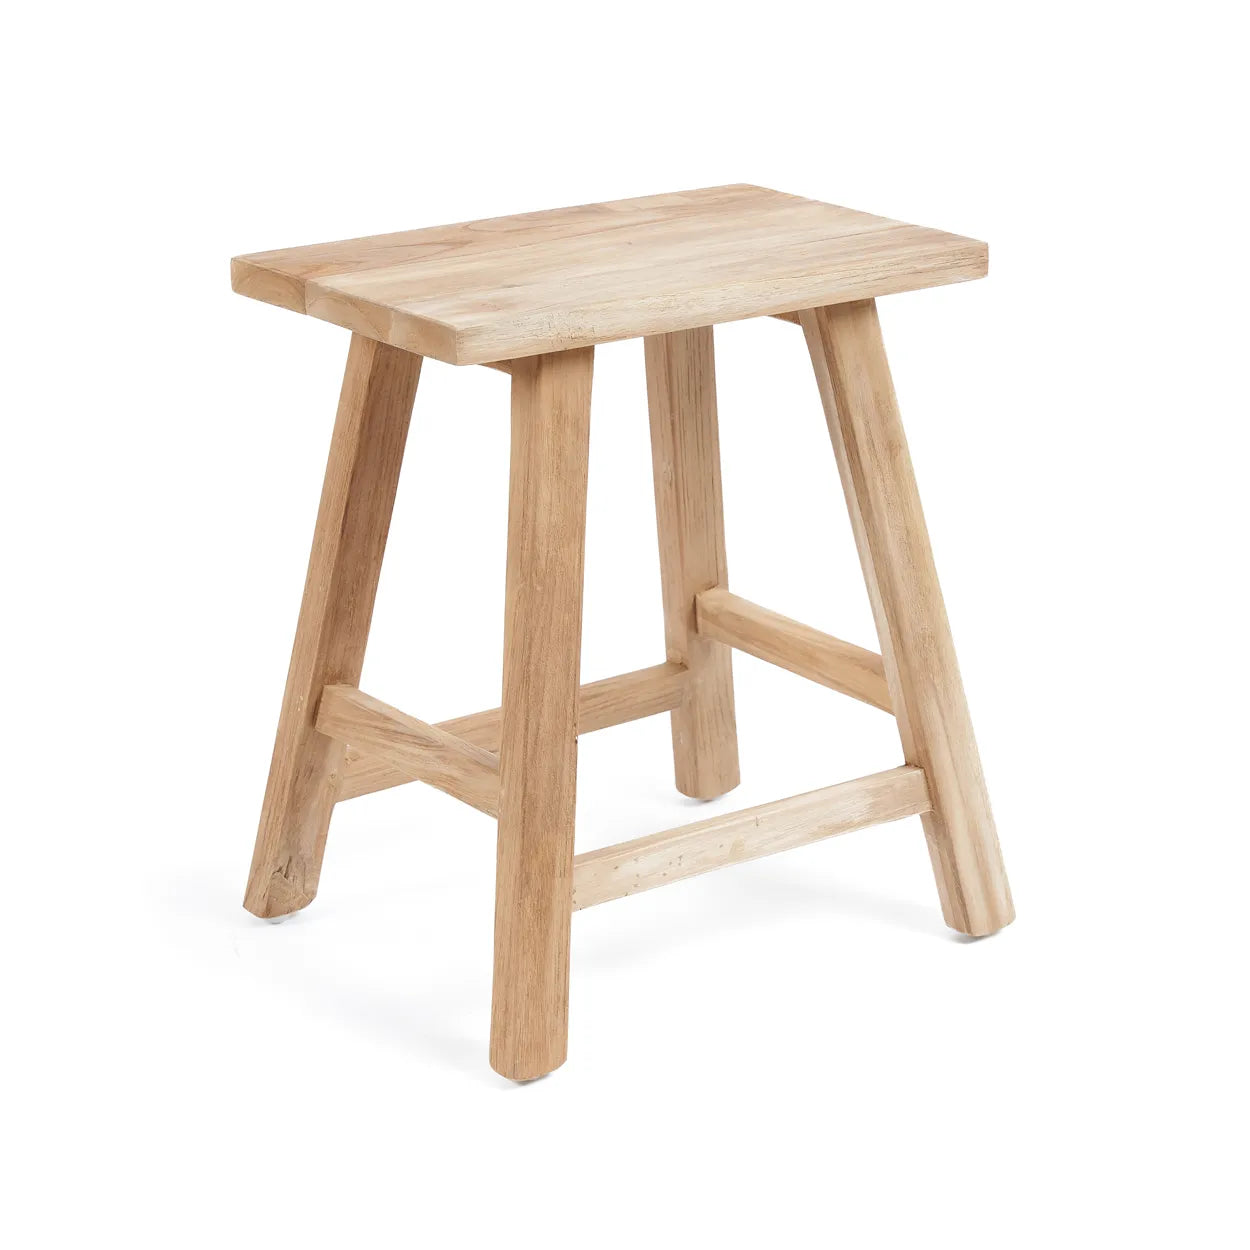 Vielha Woodland Table - Reclaimed Teak Table